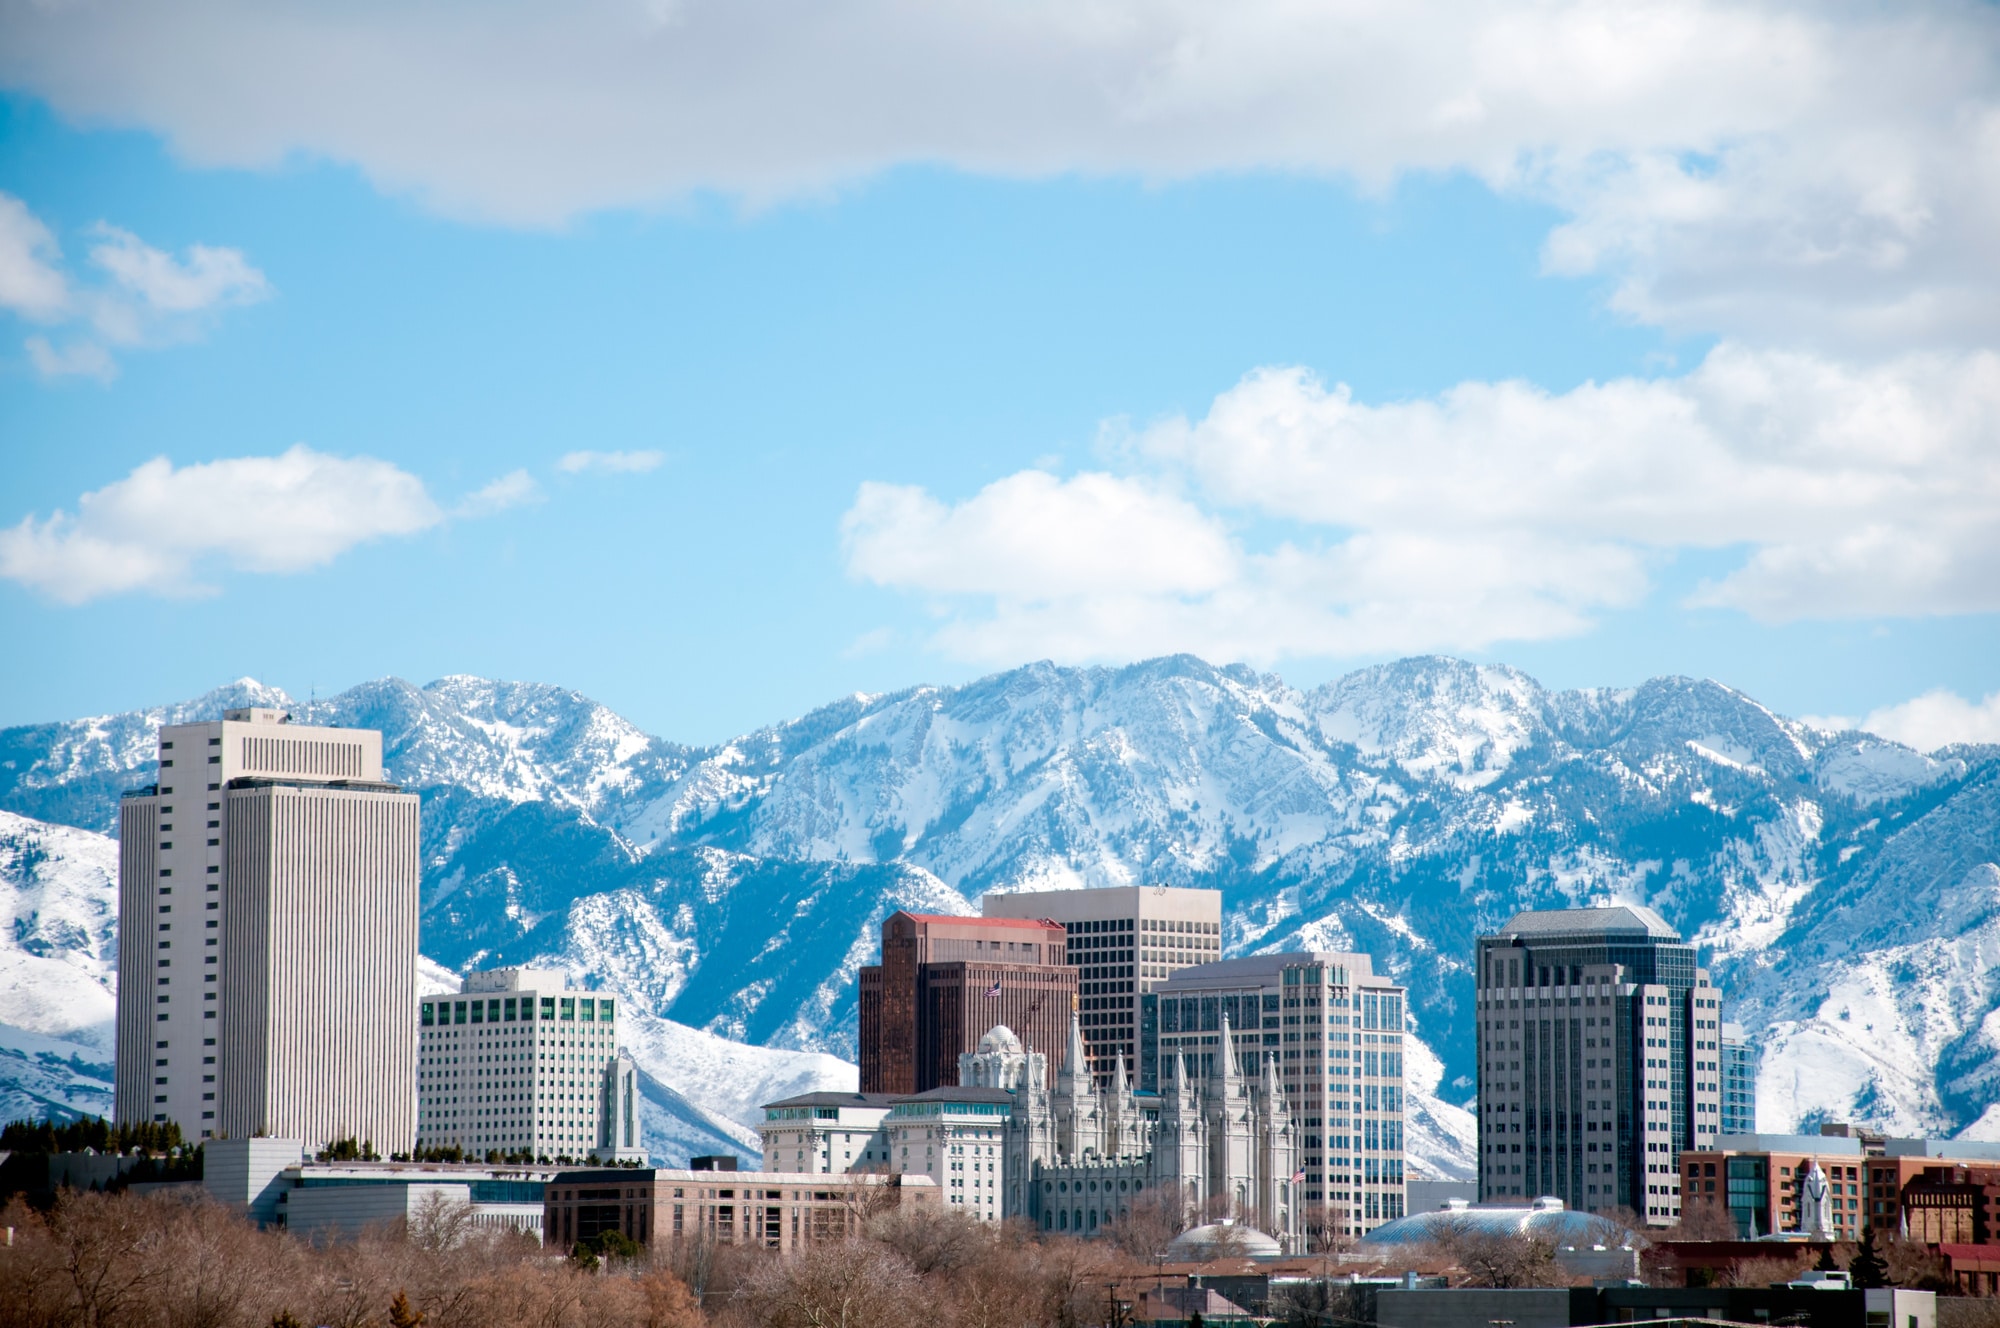 Salt Lake City most future-focused city